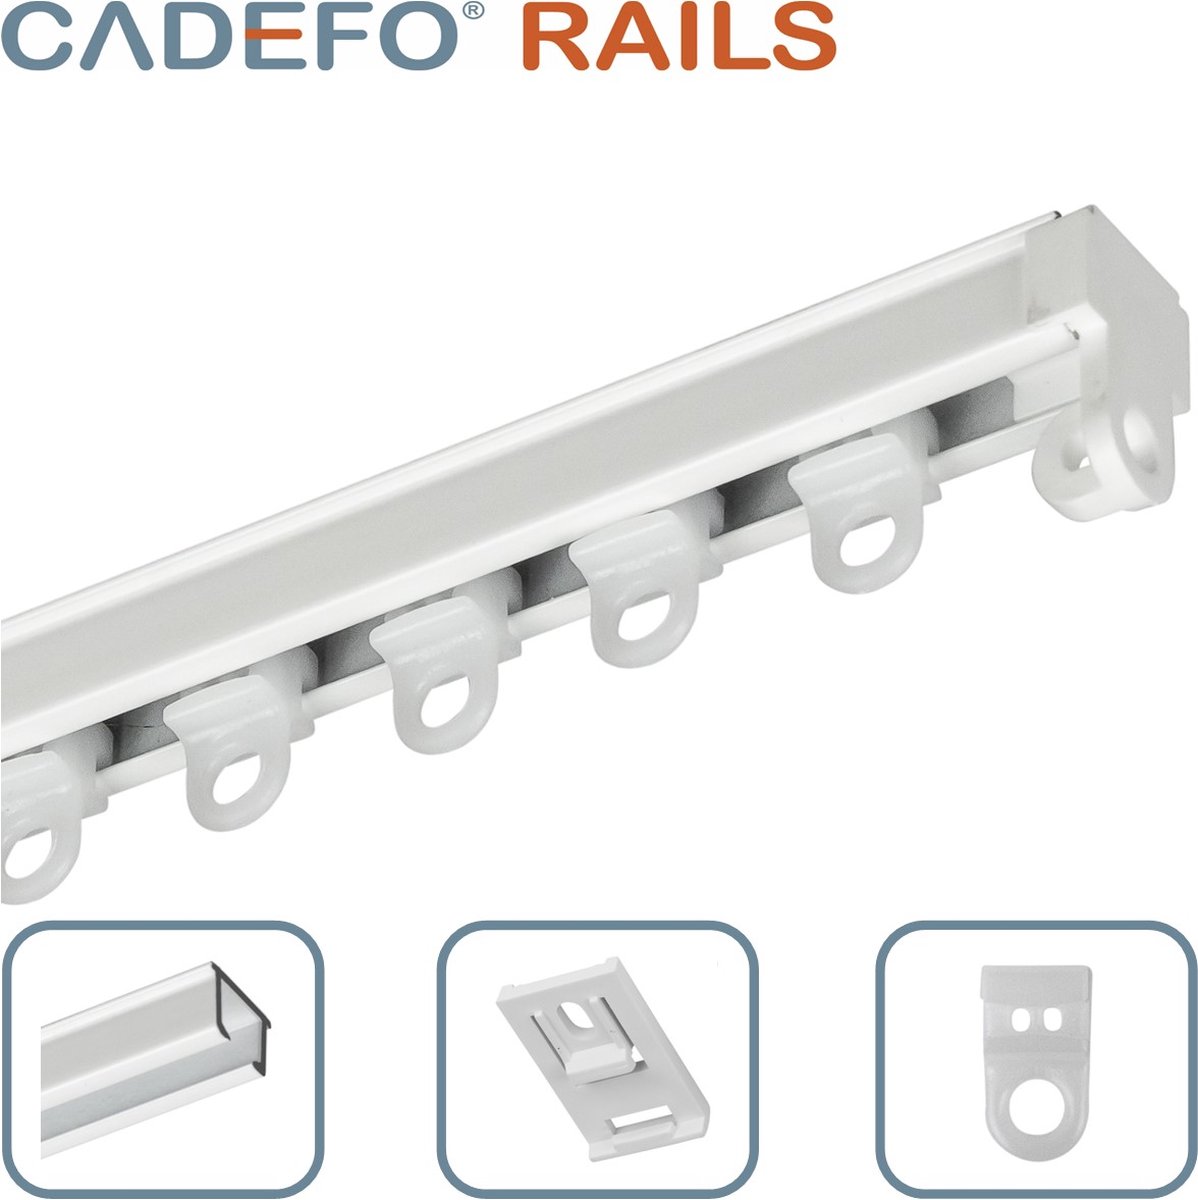 CADEFO RAILS (301 - 350 cm) Gordijnrails - Compleet op maat! - UIT 1 STUK - Leverbaar tot 6 meter - Plafondbevestiging - Lengte 339 cm